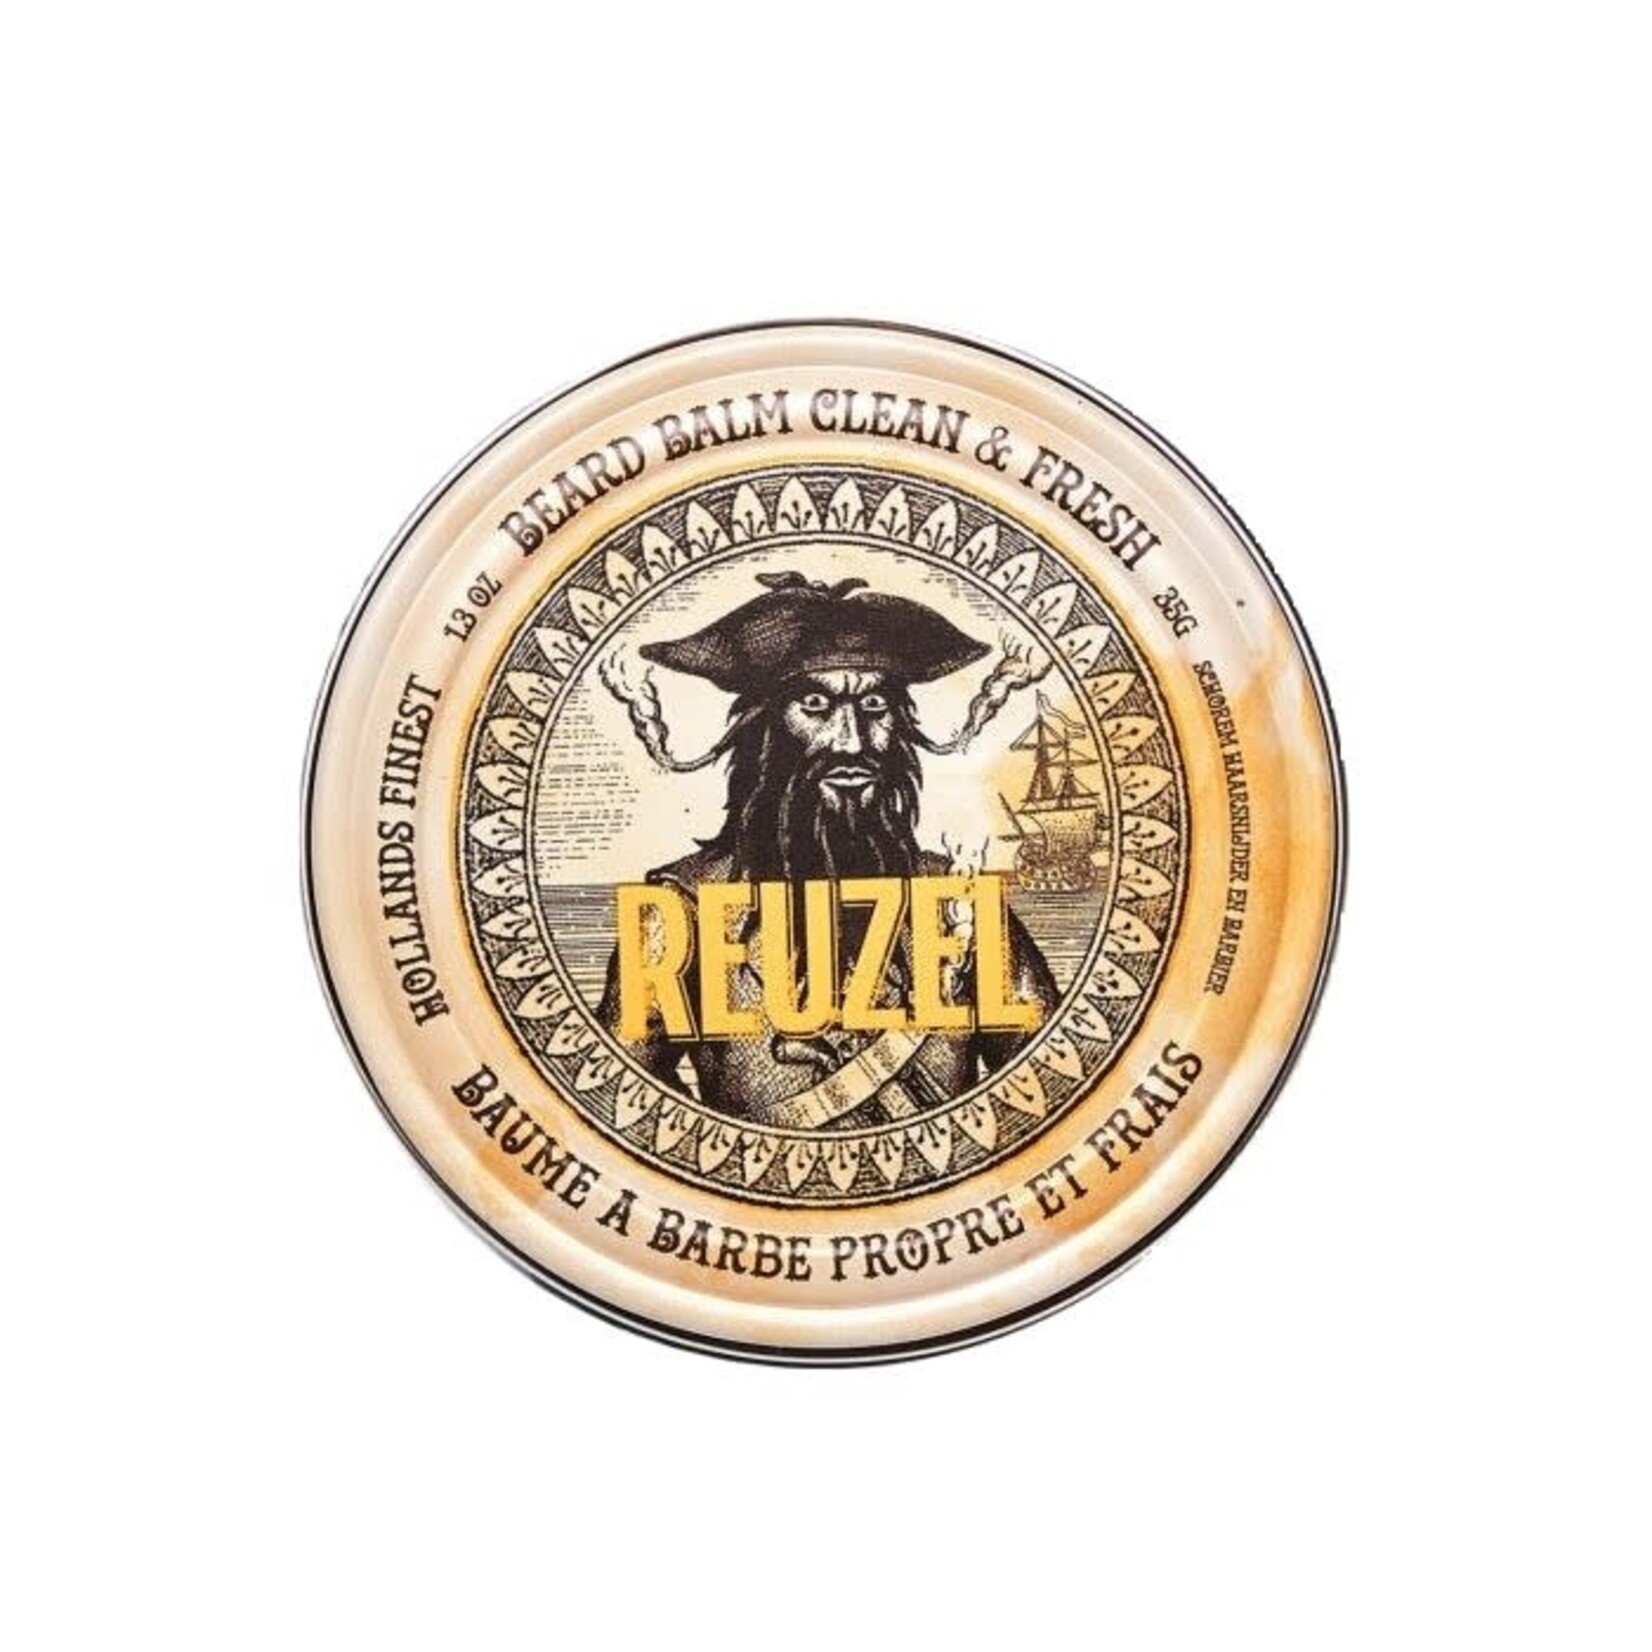 Reuzel Reuzel - Beard balm clean and fresh 35g